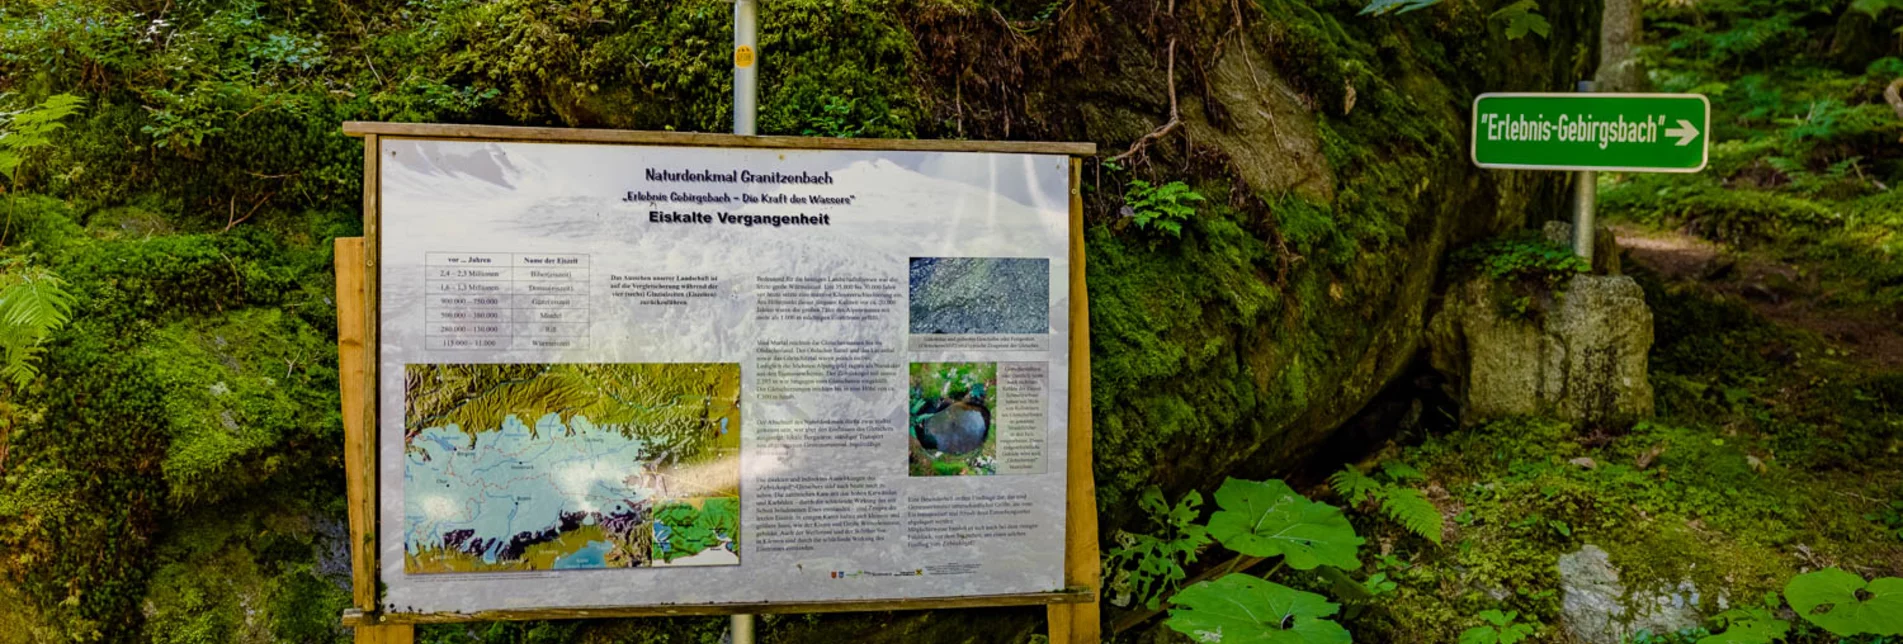 Wasserwege Naturdenkmal Granitzenbach nach St. Wolfgang - Touren-Impression #1 | © Erlebnisregion Murtal